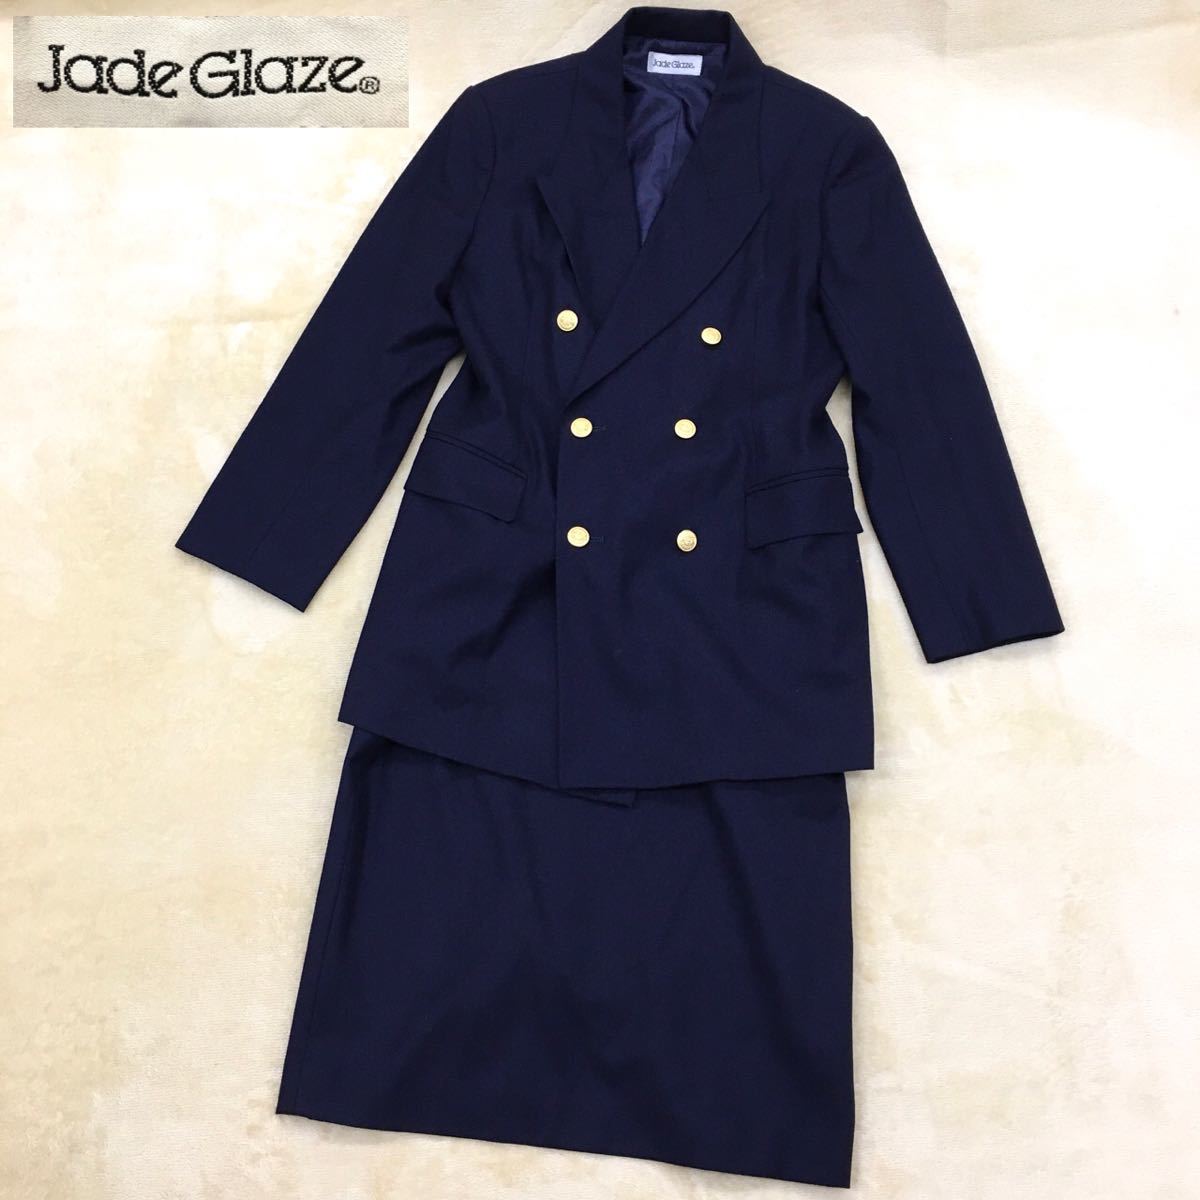 Jade Glaze セットアップ 紺ブレ ブレザー ダブルジャケット 金ボタン 肩パッド スカート ウール レディース サイズ11号